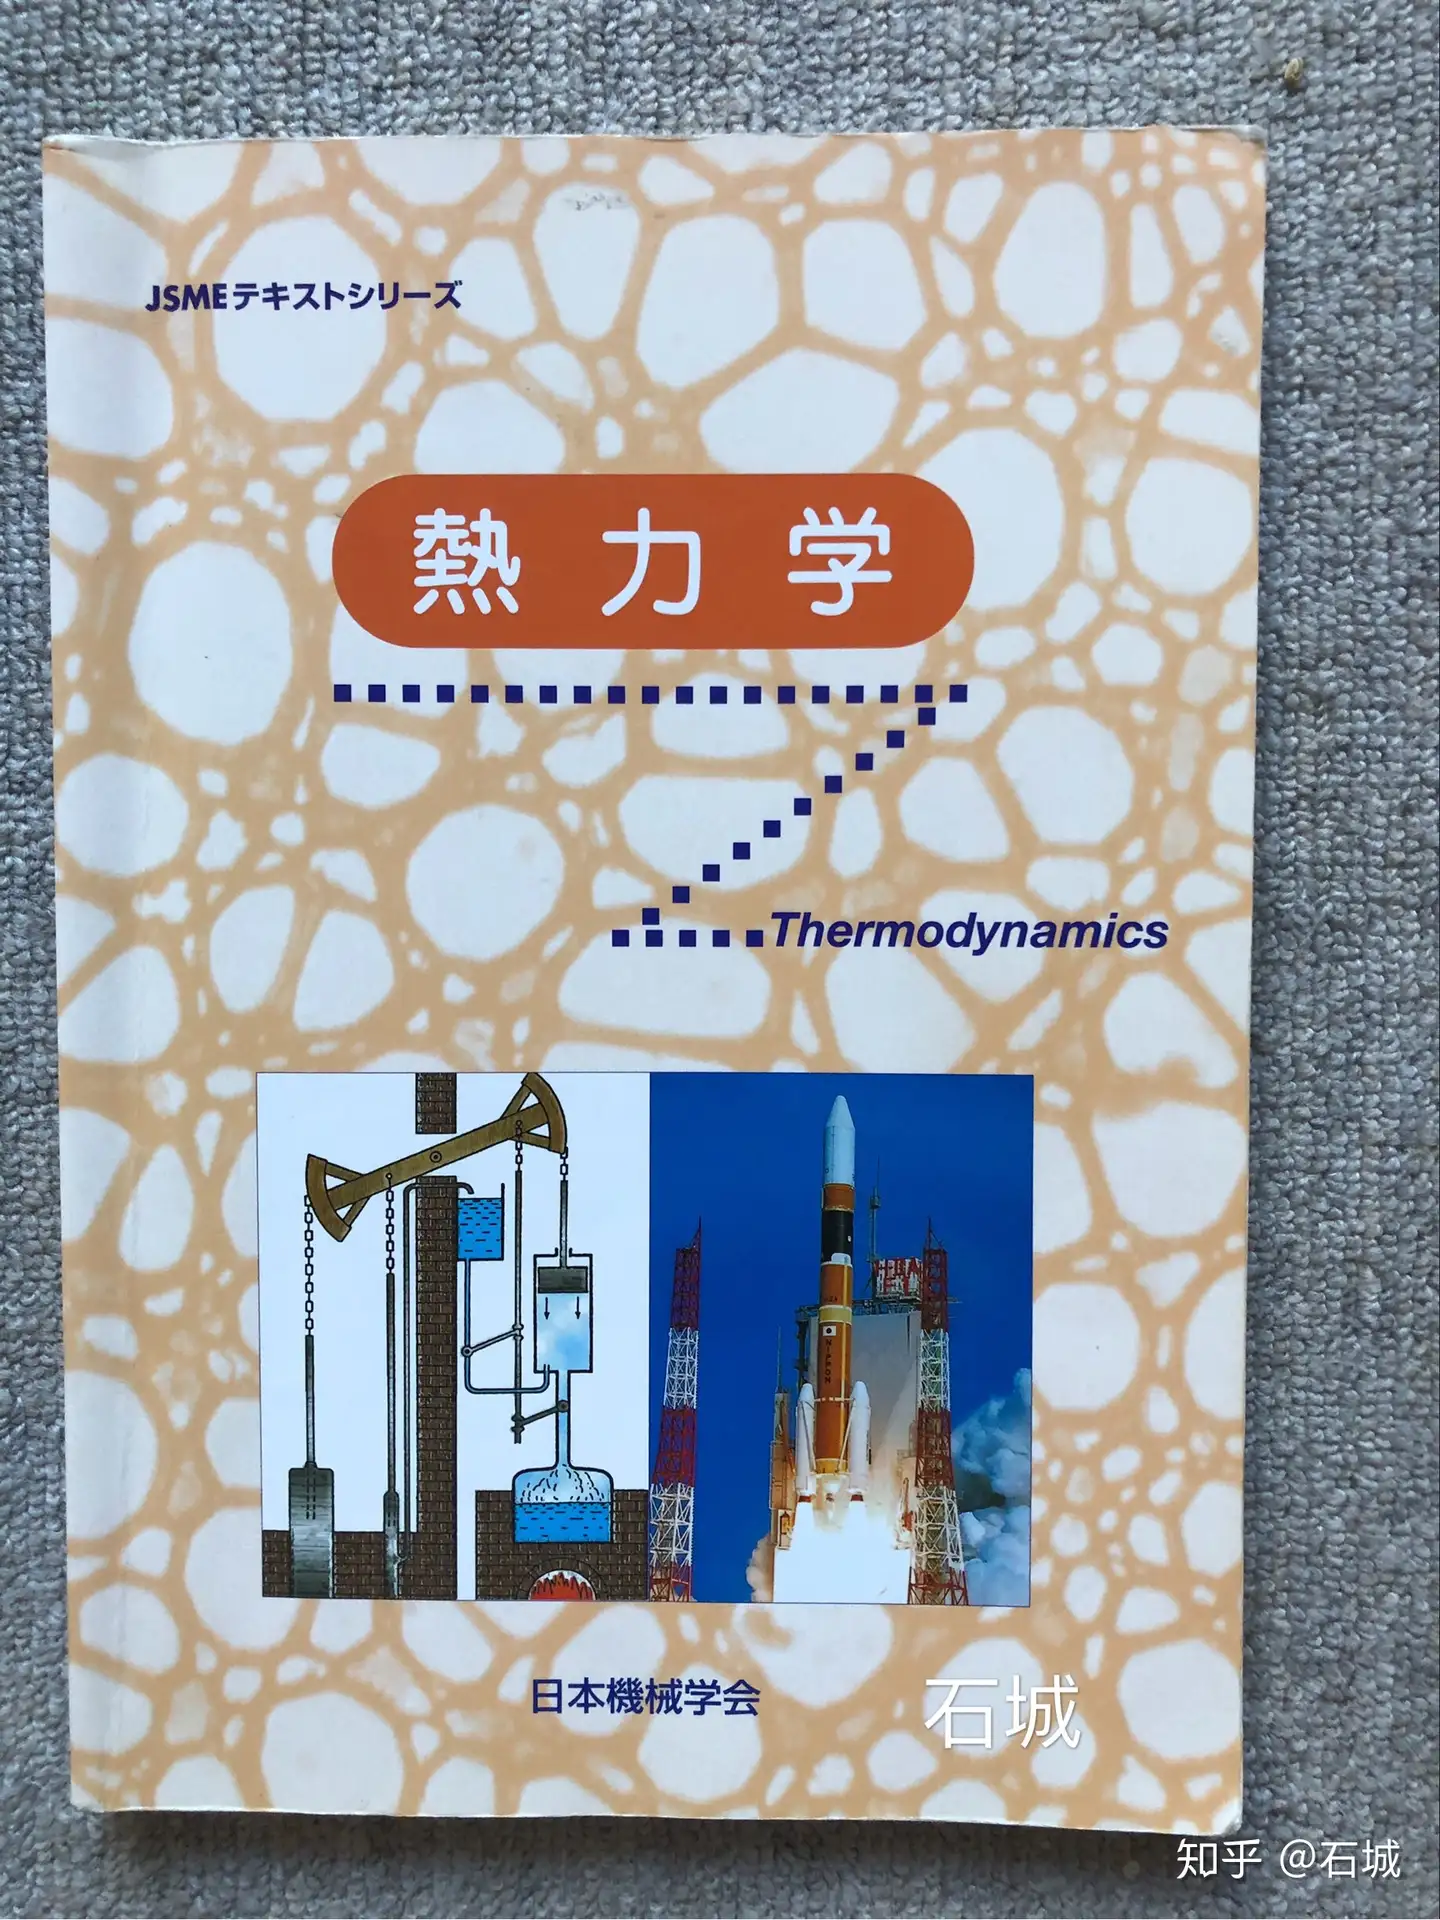 下一个拿到合格通知书的就是你了！东京工业大学机械系修士备考经验分享